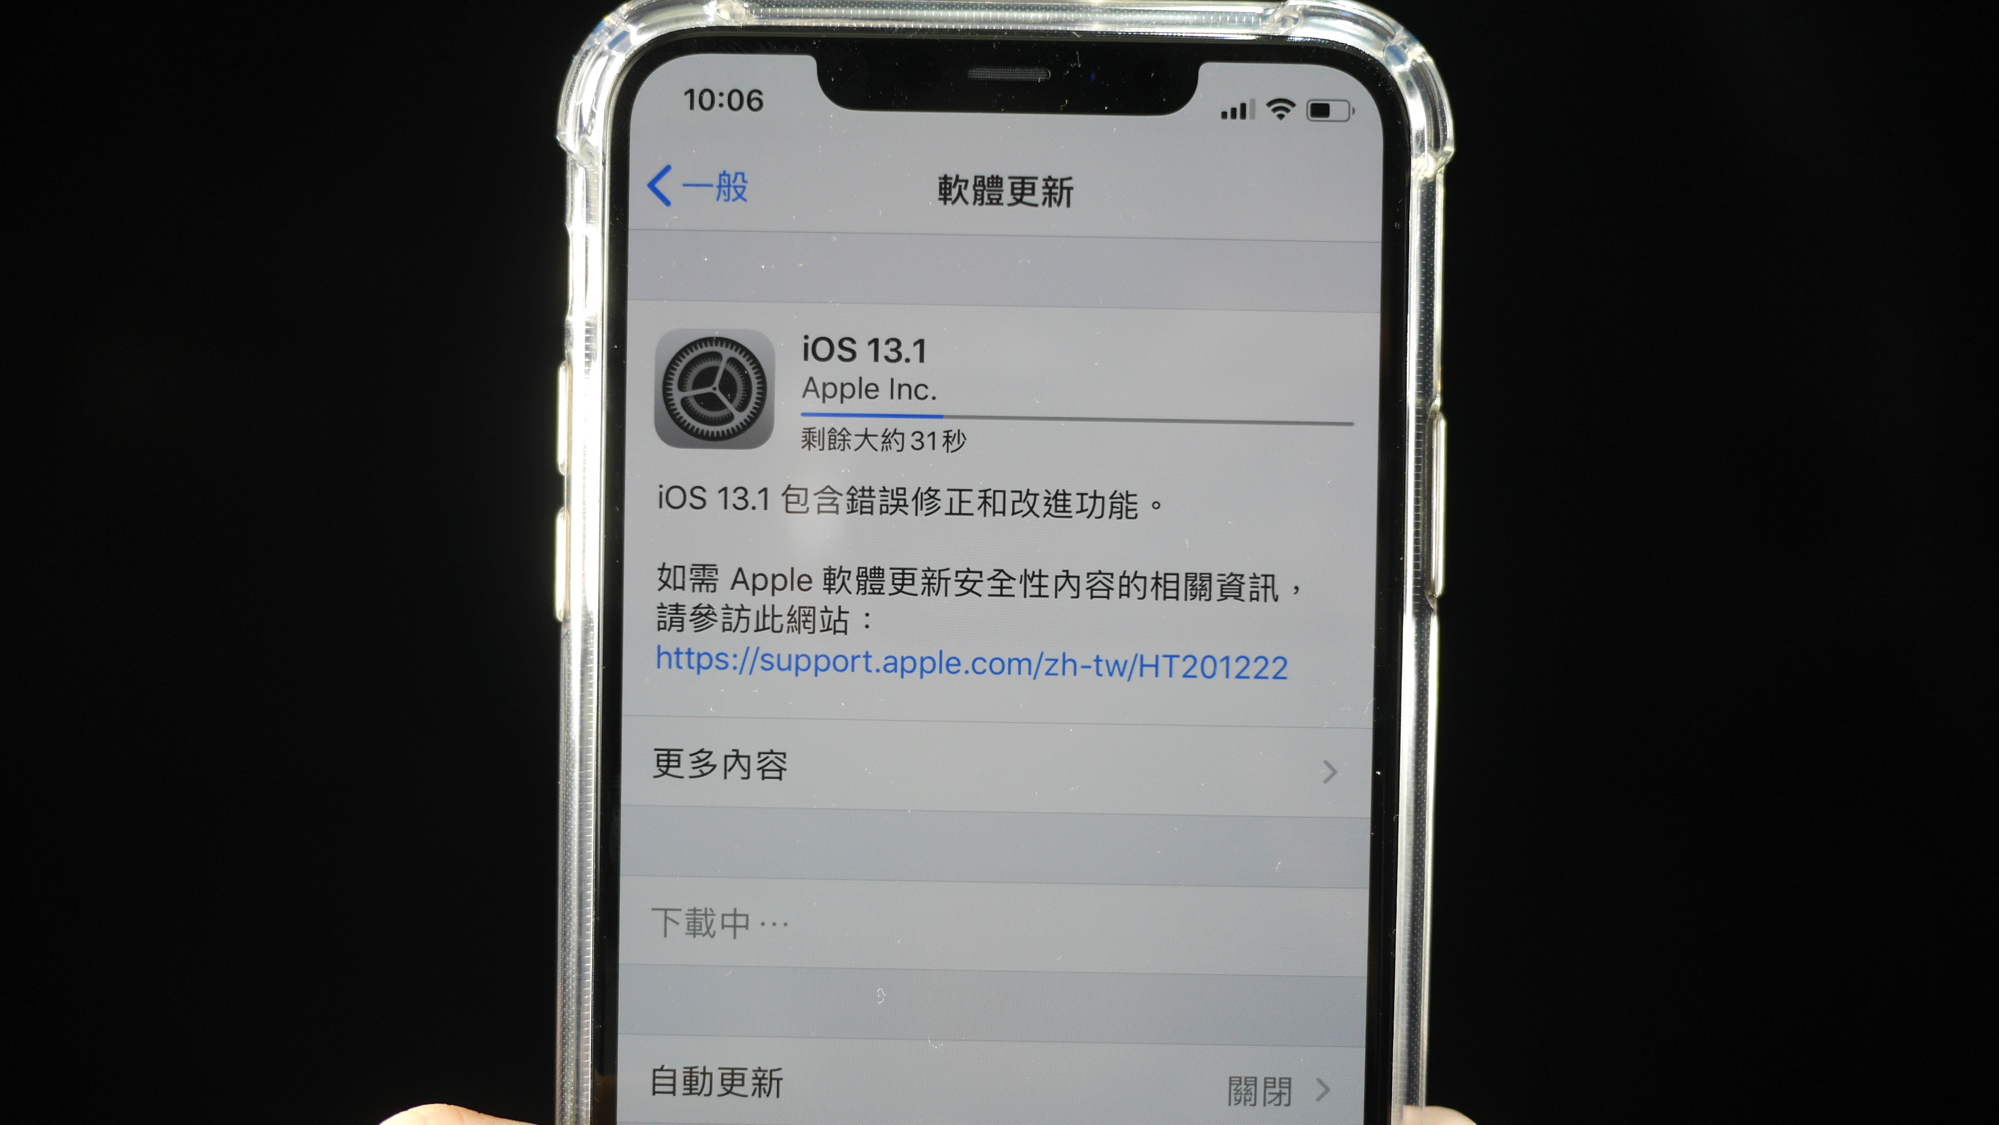 【快訊報報】iOS 13.1 可以更新囉～趕快讓 iPhone 脫離災情滿滿的 iOS 13 吧！ - APPLE, iOS, iOS13, ios13.1, iPhone, Iphone 7, iphone11, iphone11pro, iphone8, iphonex, iPhoneXR, iPhoneXS - 科技狗 3C DOG